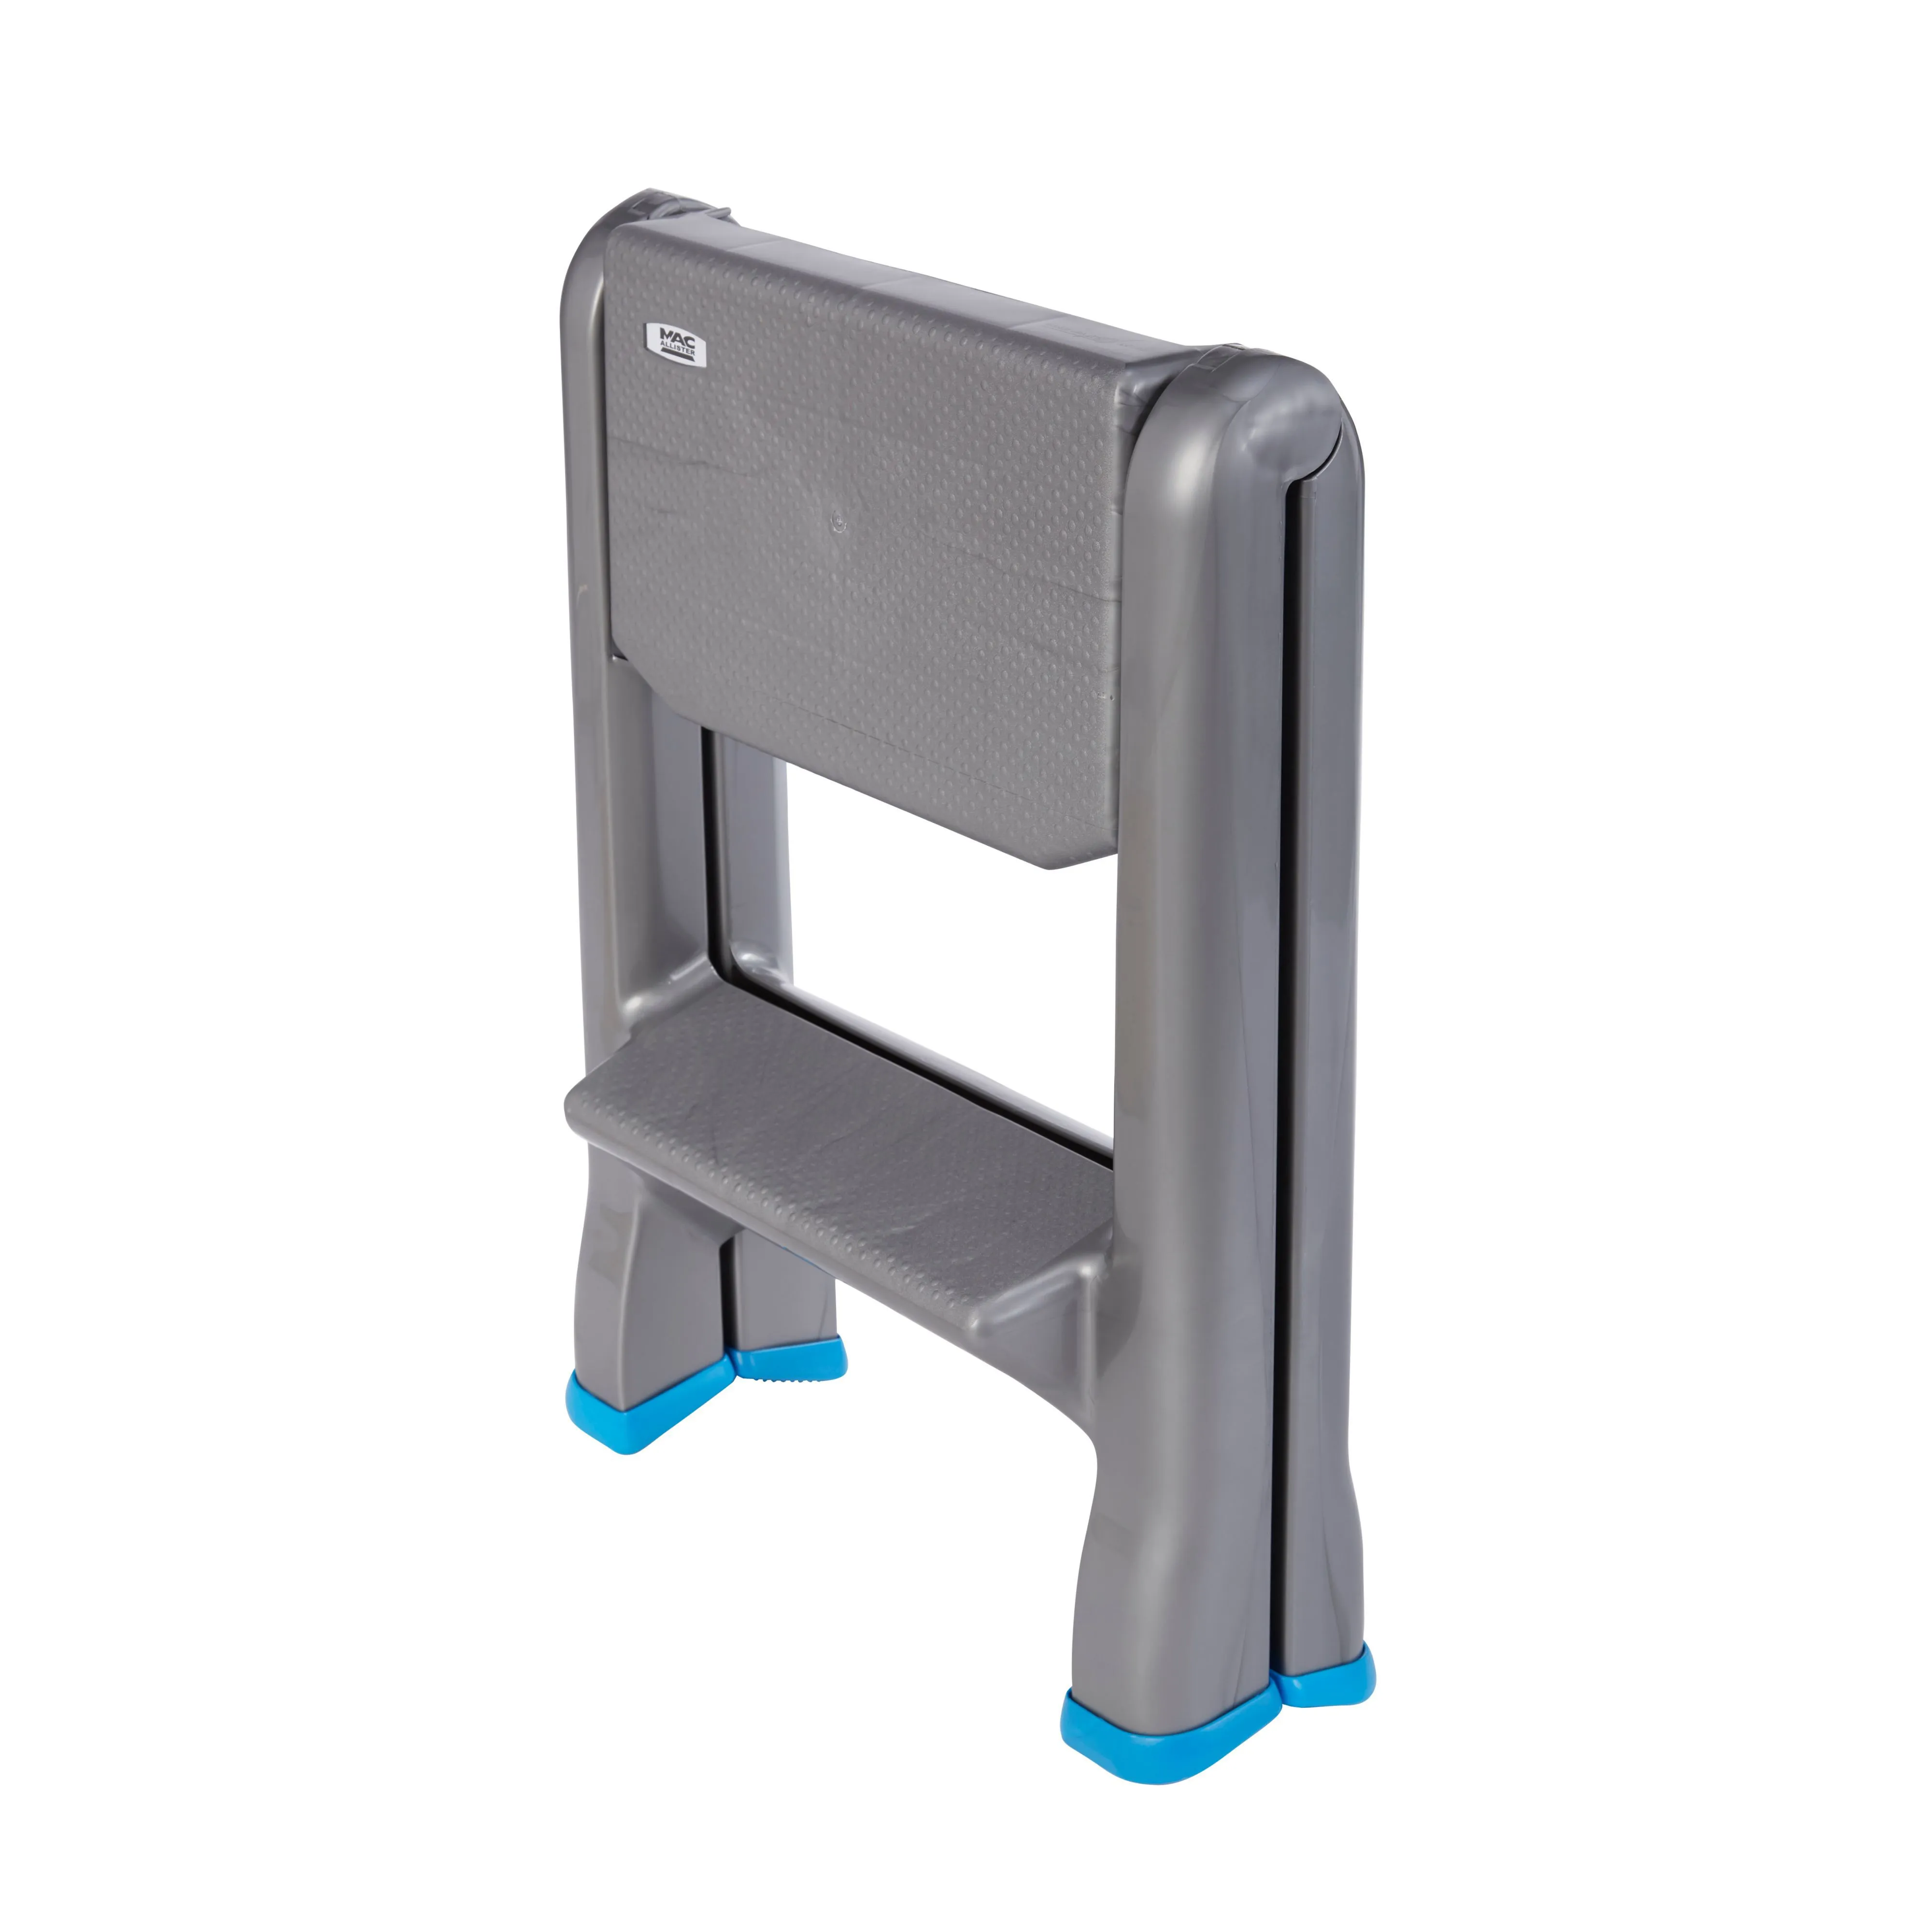 Mac Allister 2 tread Plastic Foldable Step stool (H)0.63m